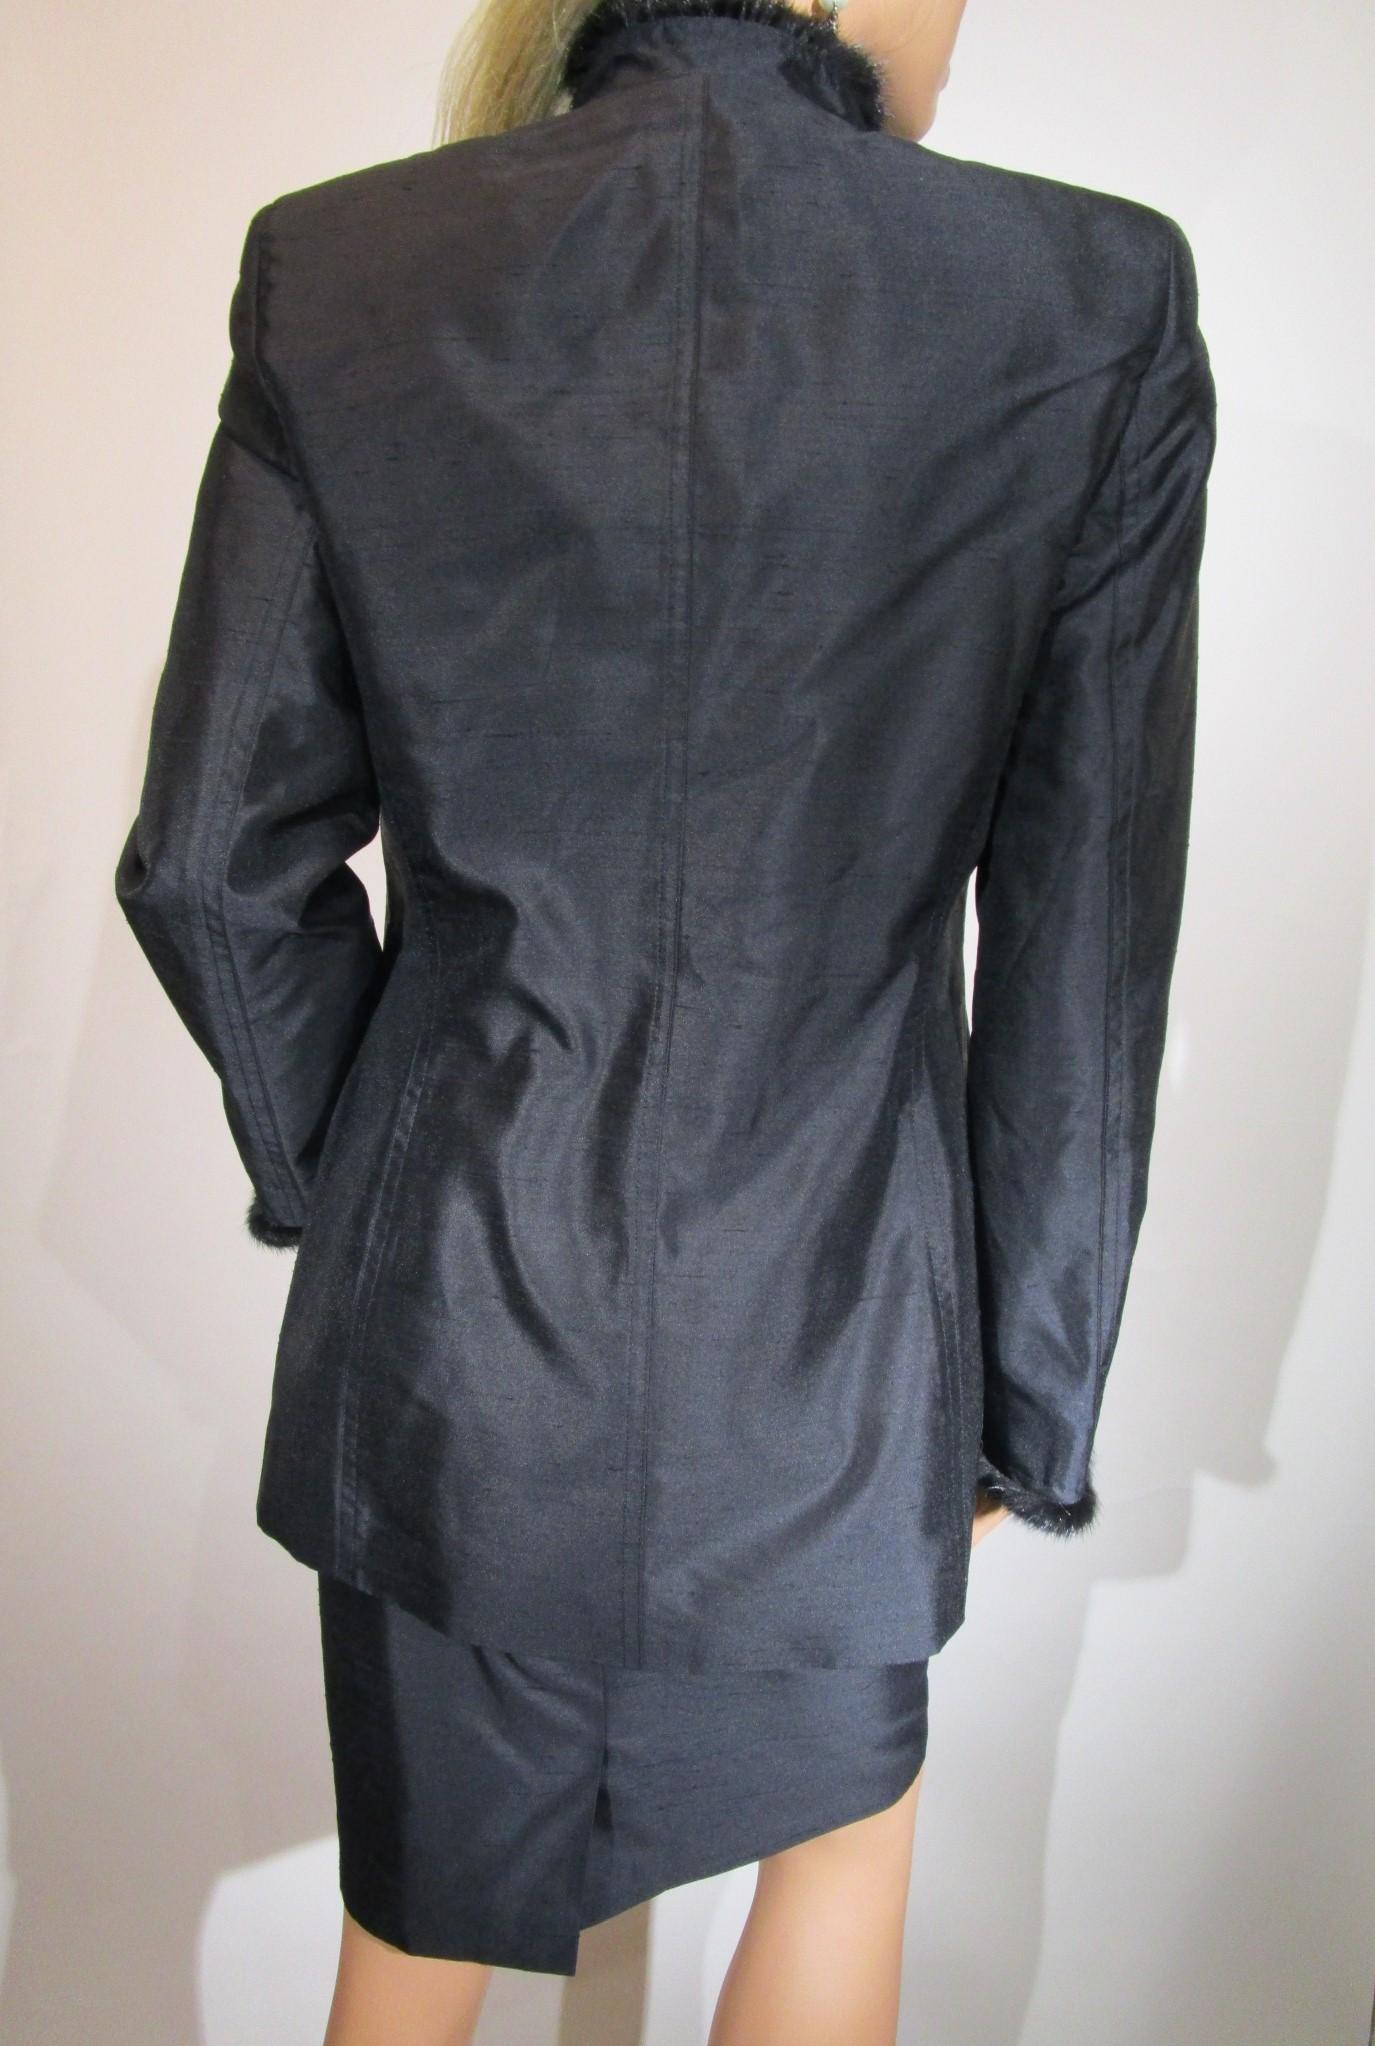 Women's ESCADA 3-piece Set MINK Trim Black Blazer Skirt Tank Top Jacket Sz 36/ US6 For Sale